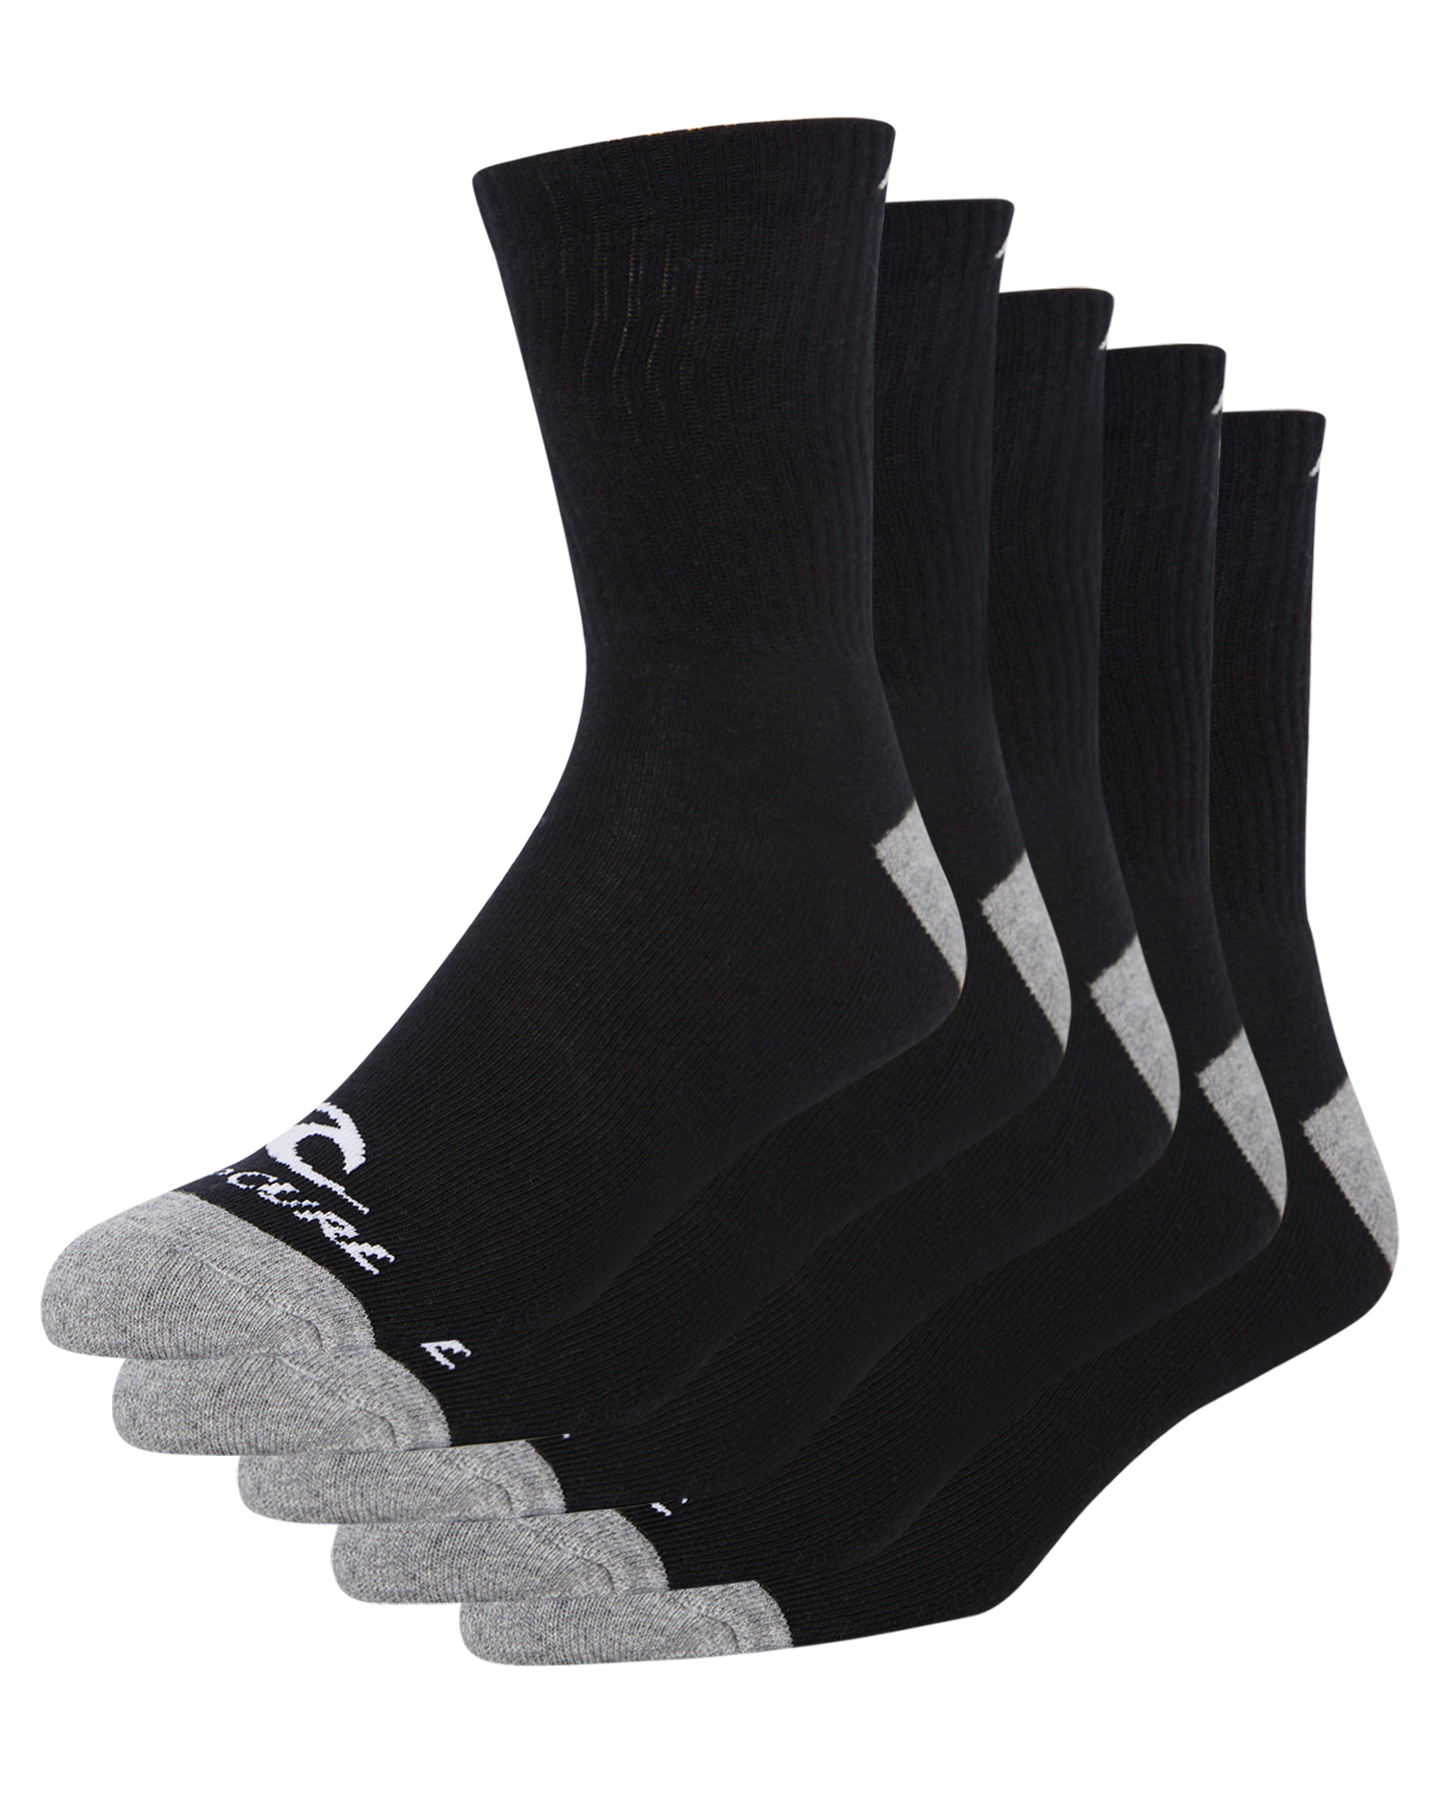 Rip Curl Rip Curl Crew Sock 5Pack - Black | SurfStitch